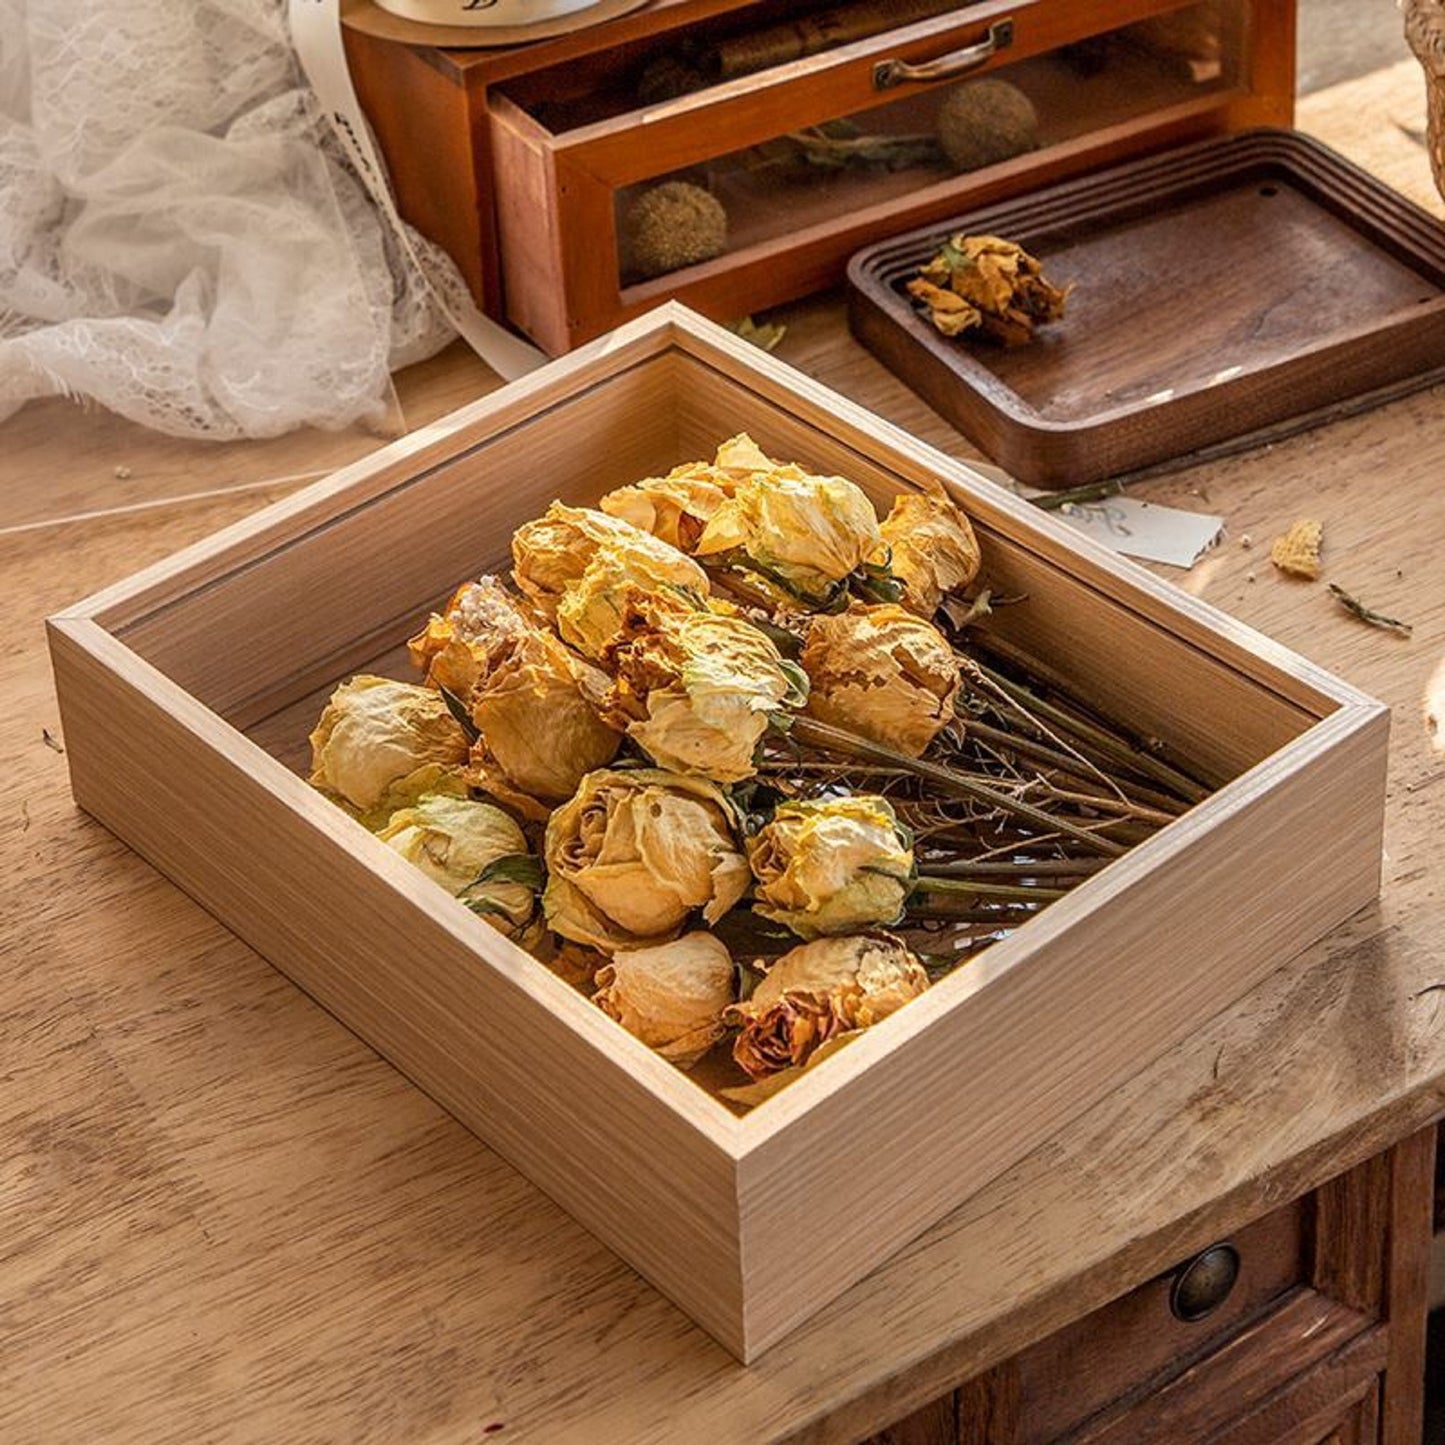 JIYUERLTD Boîte à trésors à collectionner en bois - 12" Organisez, affichez et mettez en valeur vos objets de collection, blocs, fleurs séchées, pommes de pin et coquillages avec style !